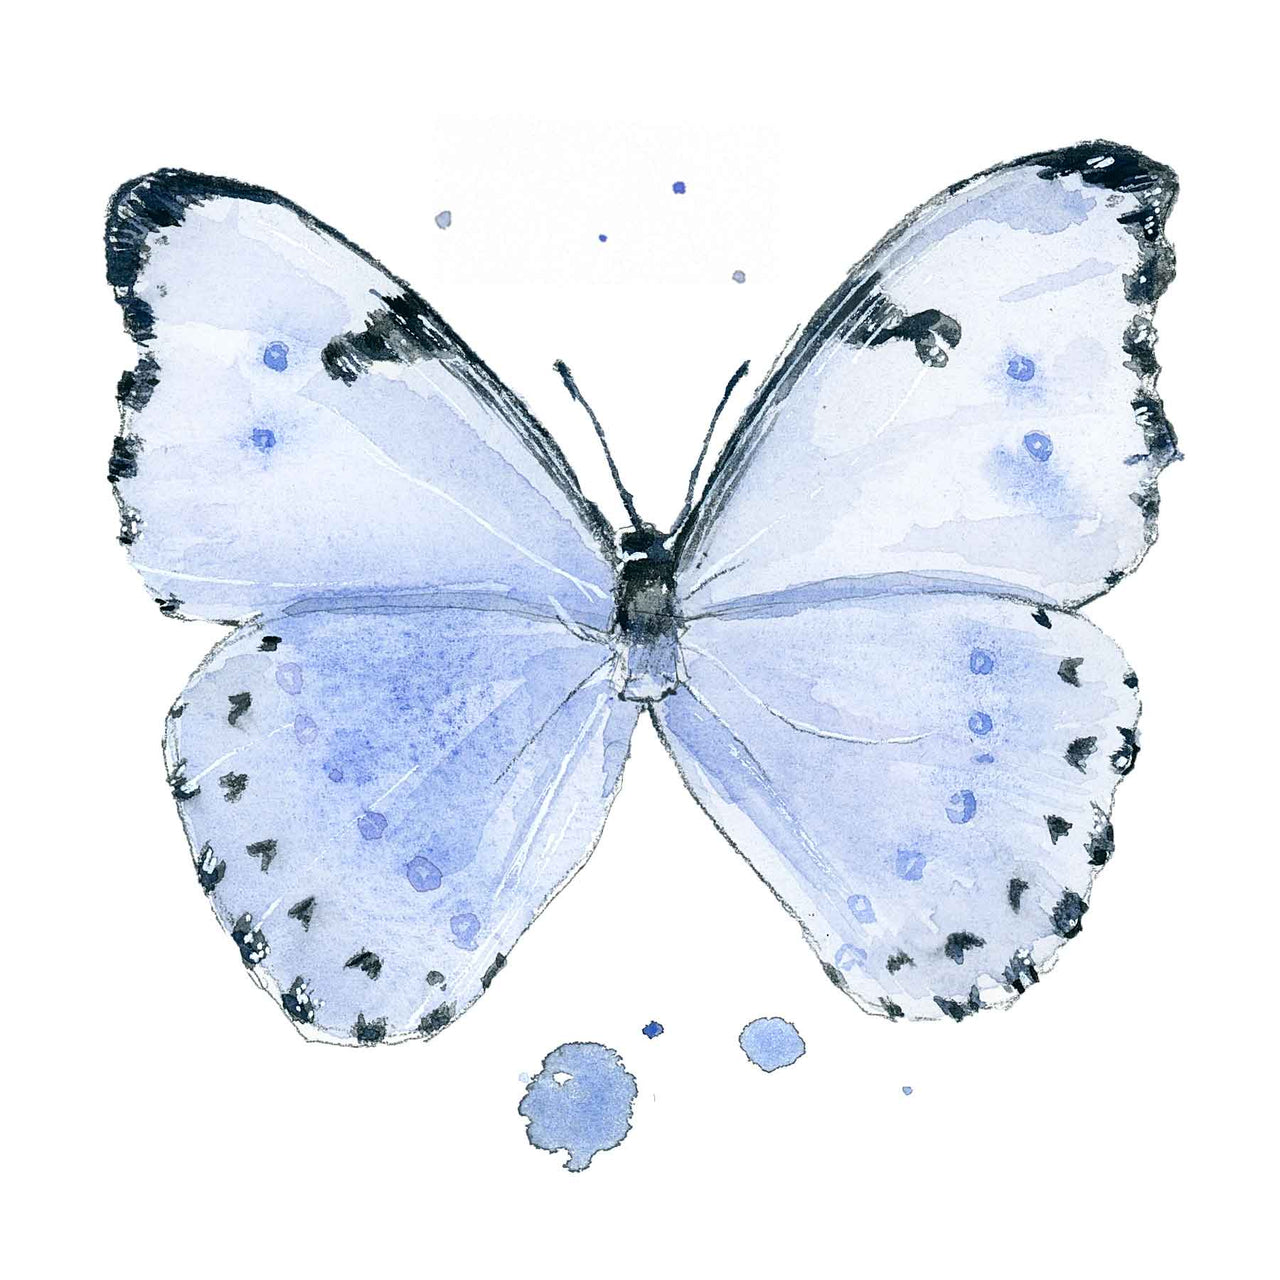 Ella's Butterflies - Blue Butterfly Print #1